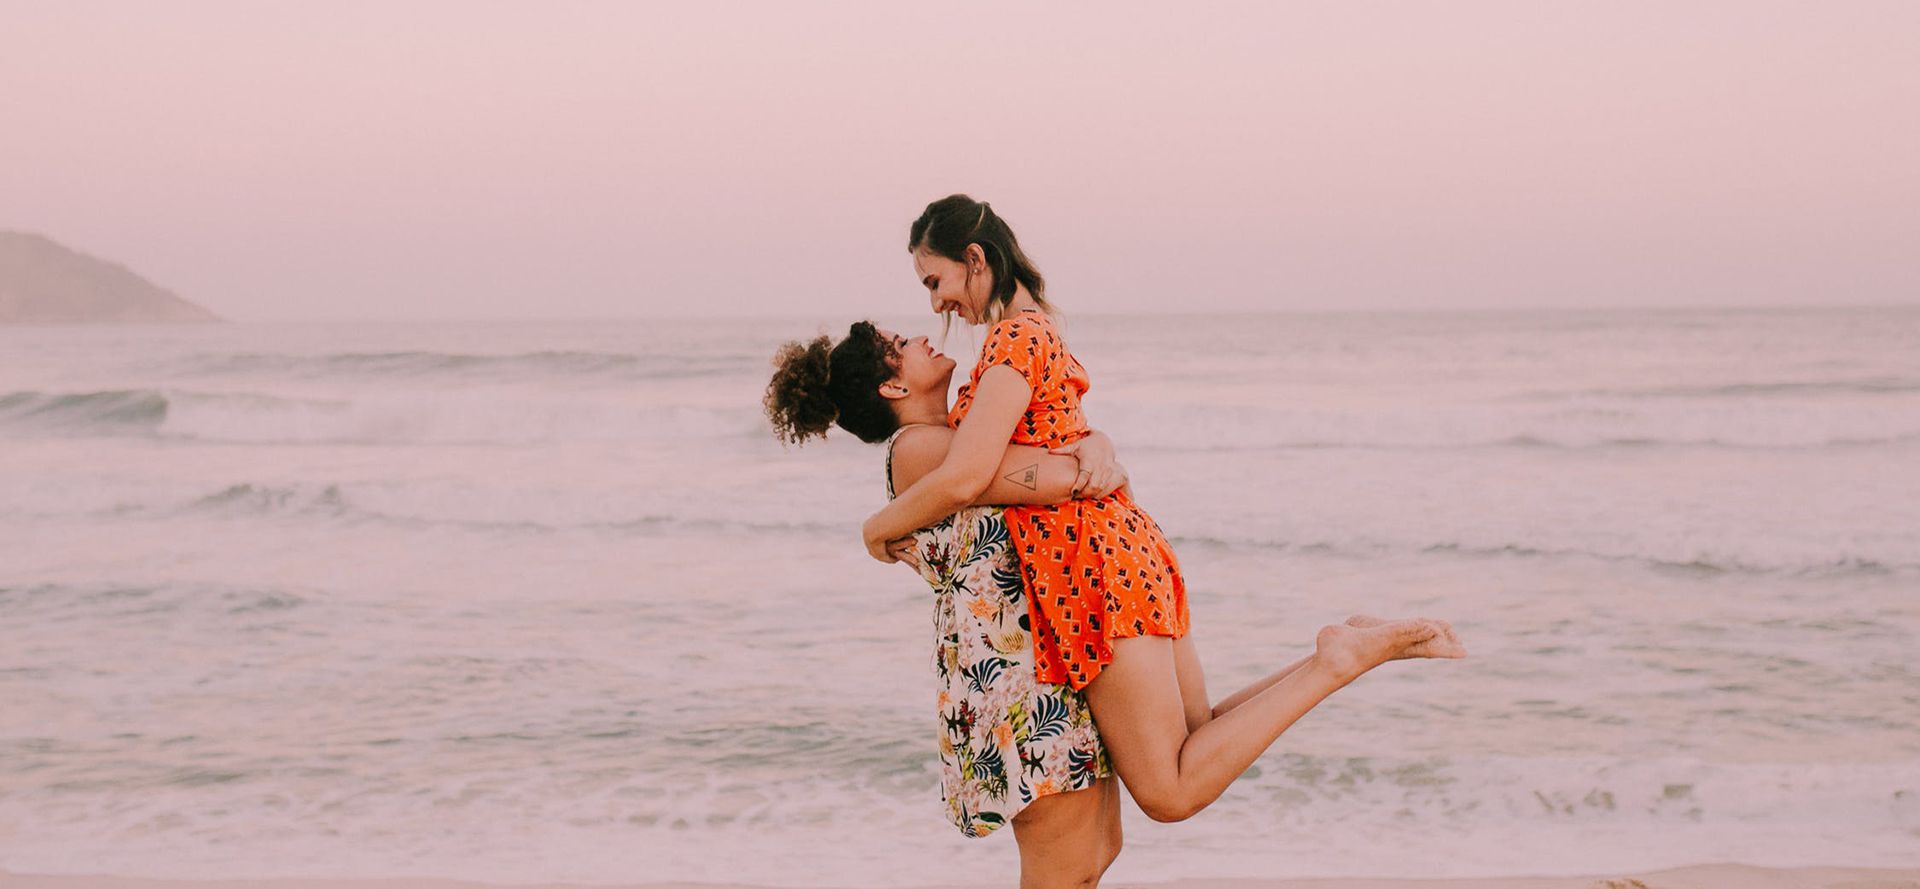 To piger på en strand dating.